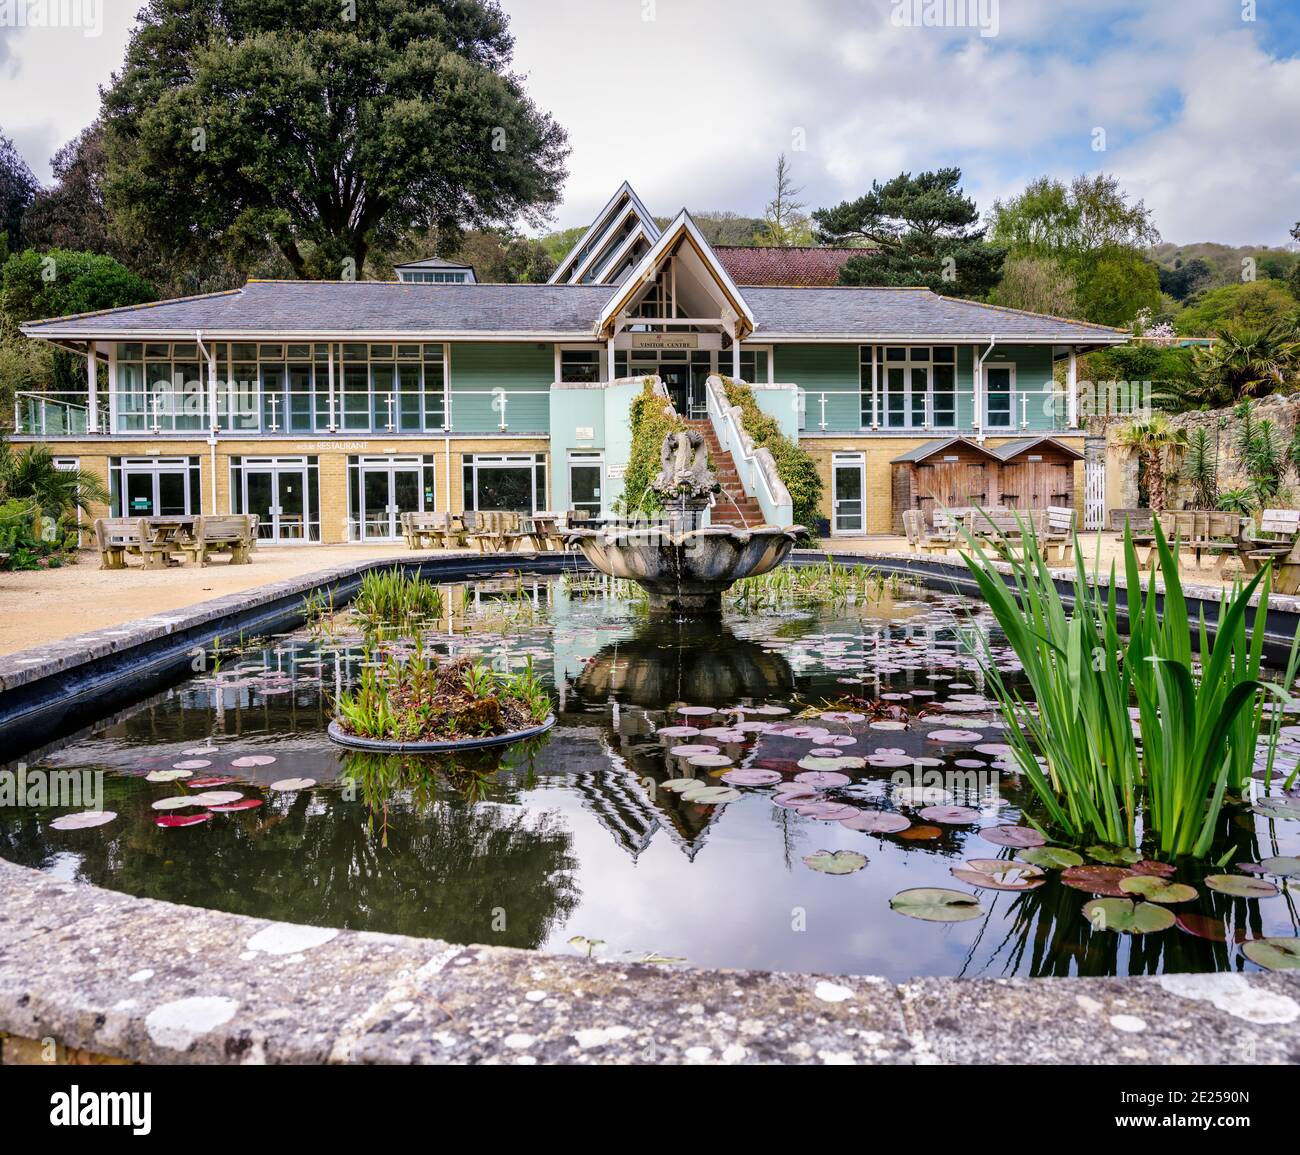 Attrazione turistica - il giardino più caldo della Gran Bretagna, il Giardino Botanico di Ventnor sull'isola di Wight, Regno Unito. Foto Stock